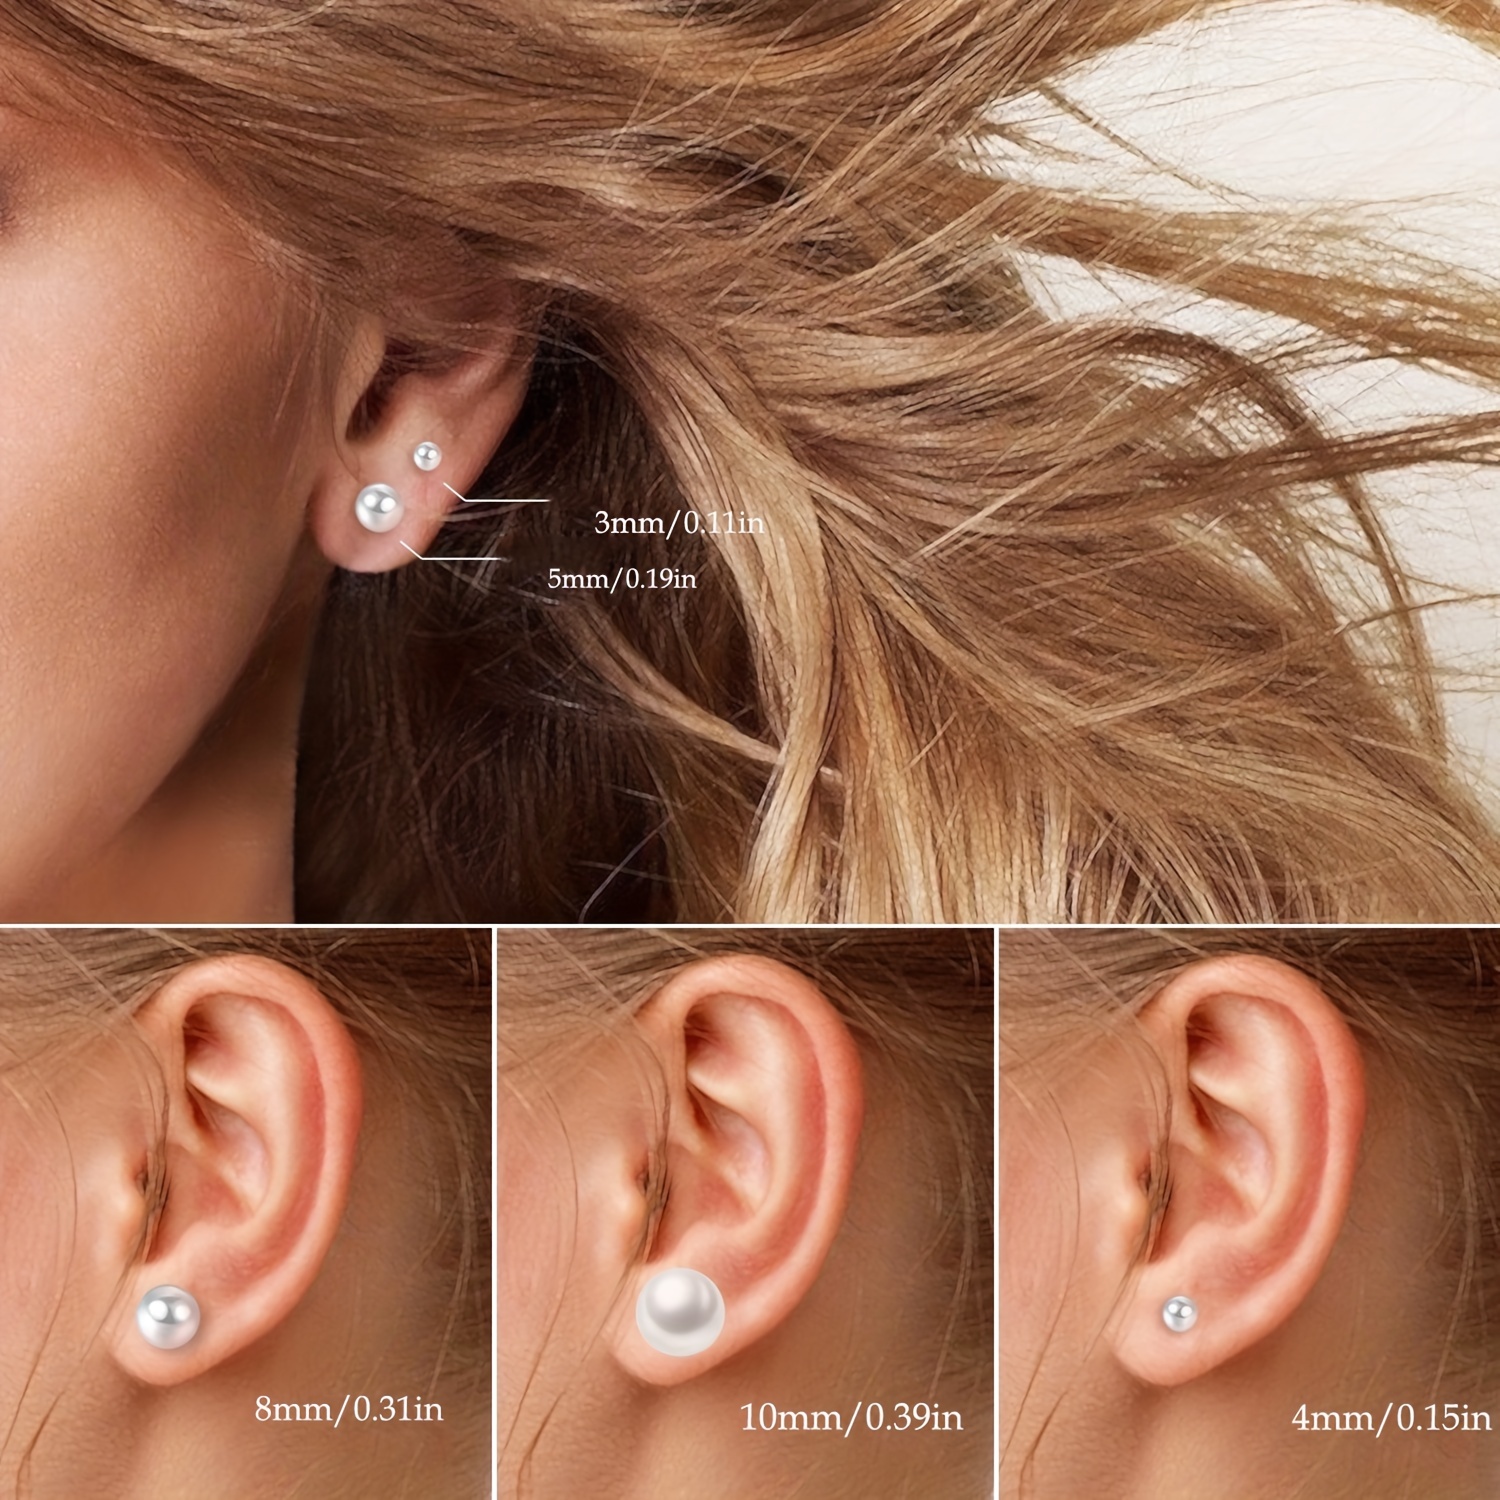 Plastic Earrings for Sensitive Ears 